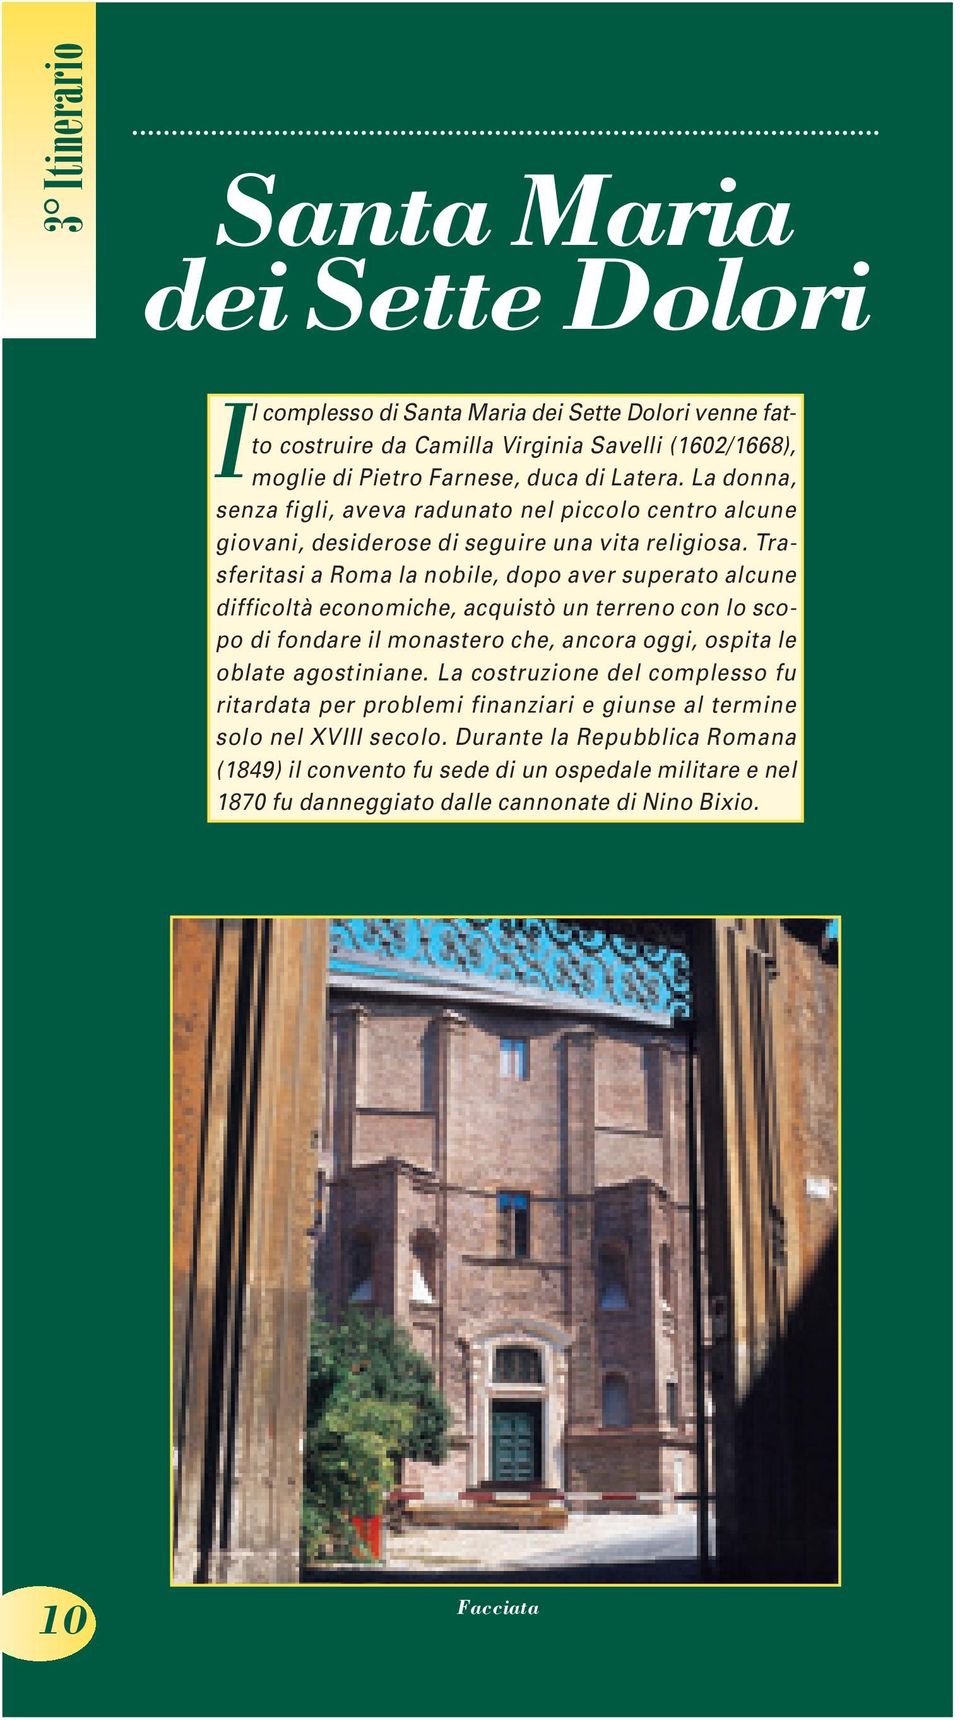 Trasferitasi a Roma la nobile, dopo aver superato alcune difficoltà economiche, acquistò un terreno con lo scopo di fondare il monastero che, ancora oggi, ospita le oblate agostiniane.